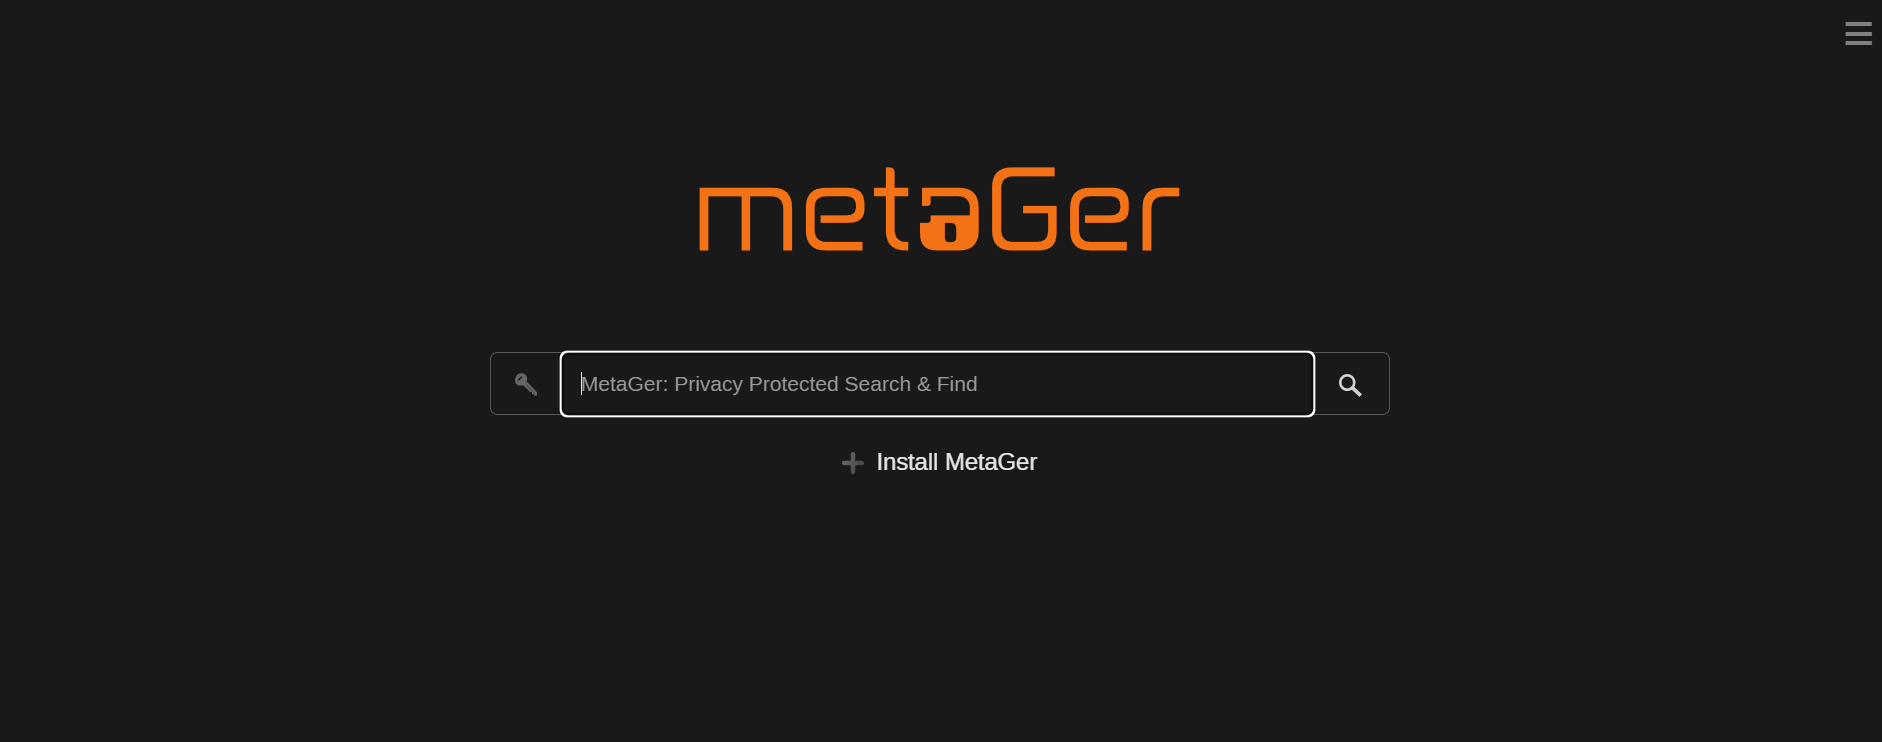 metager